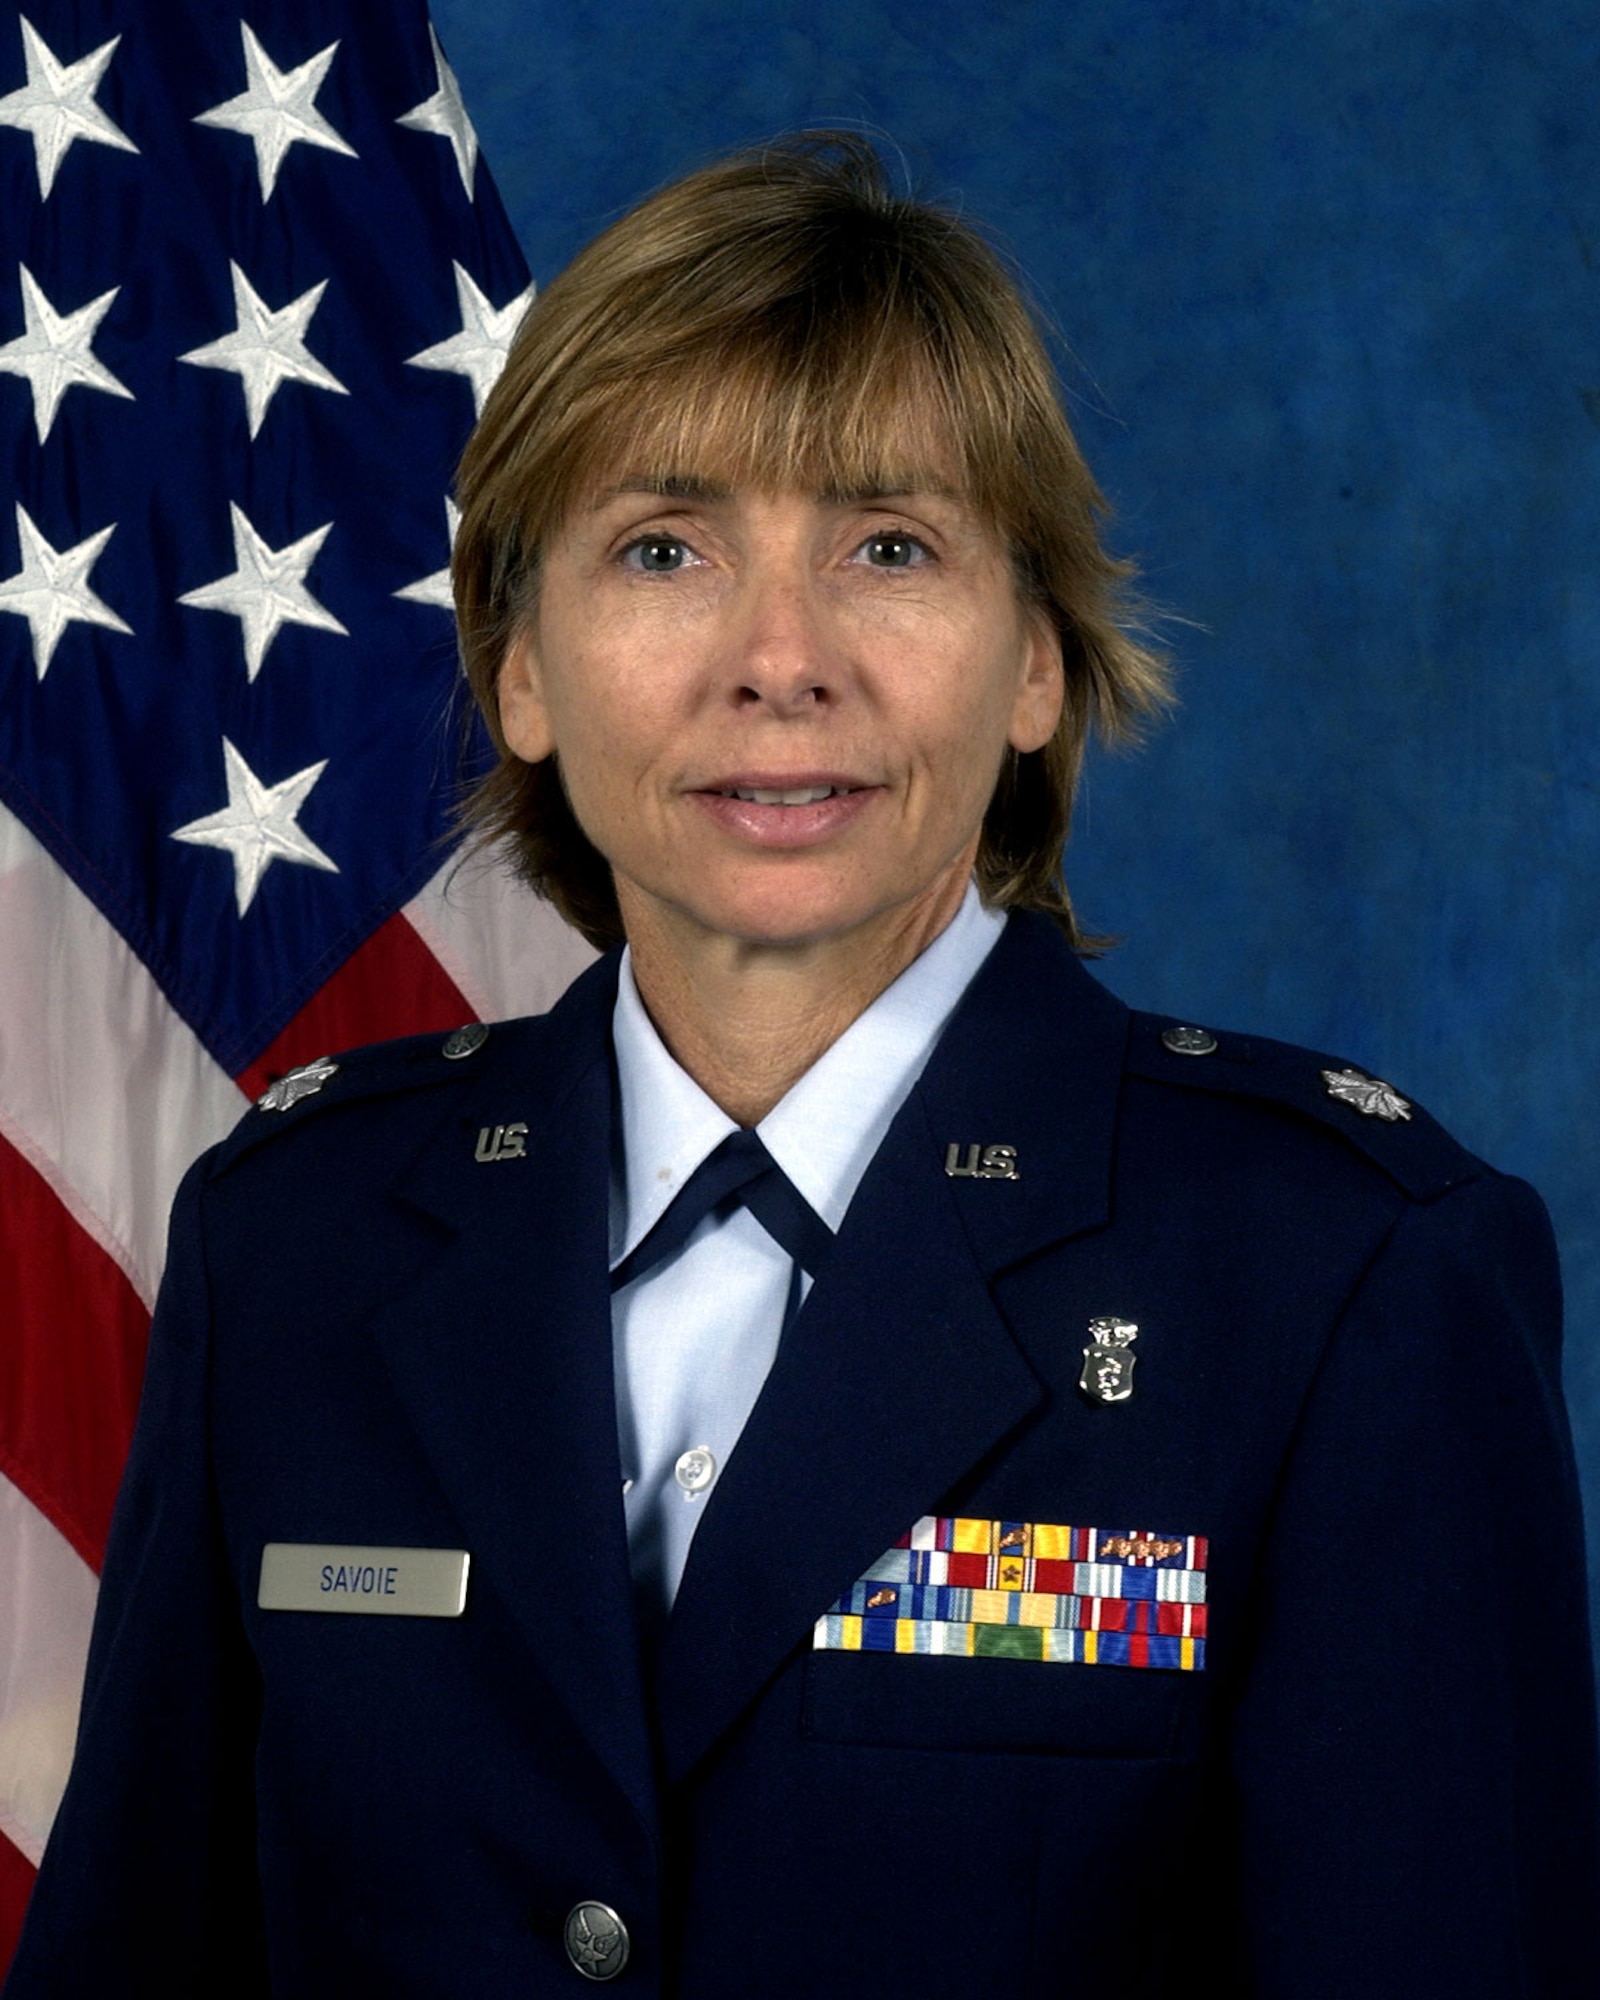 Lt. Col. Tammy M. Savoie